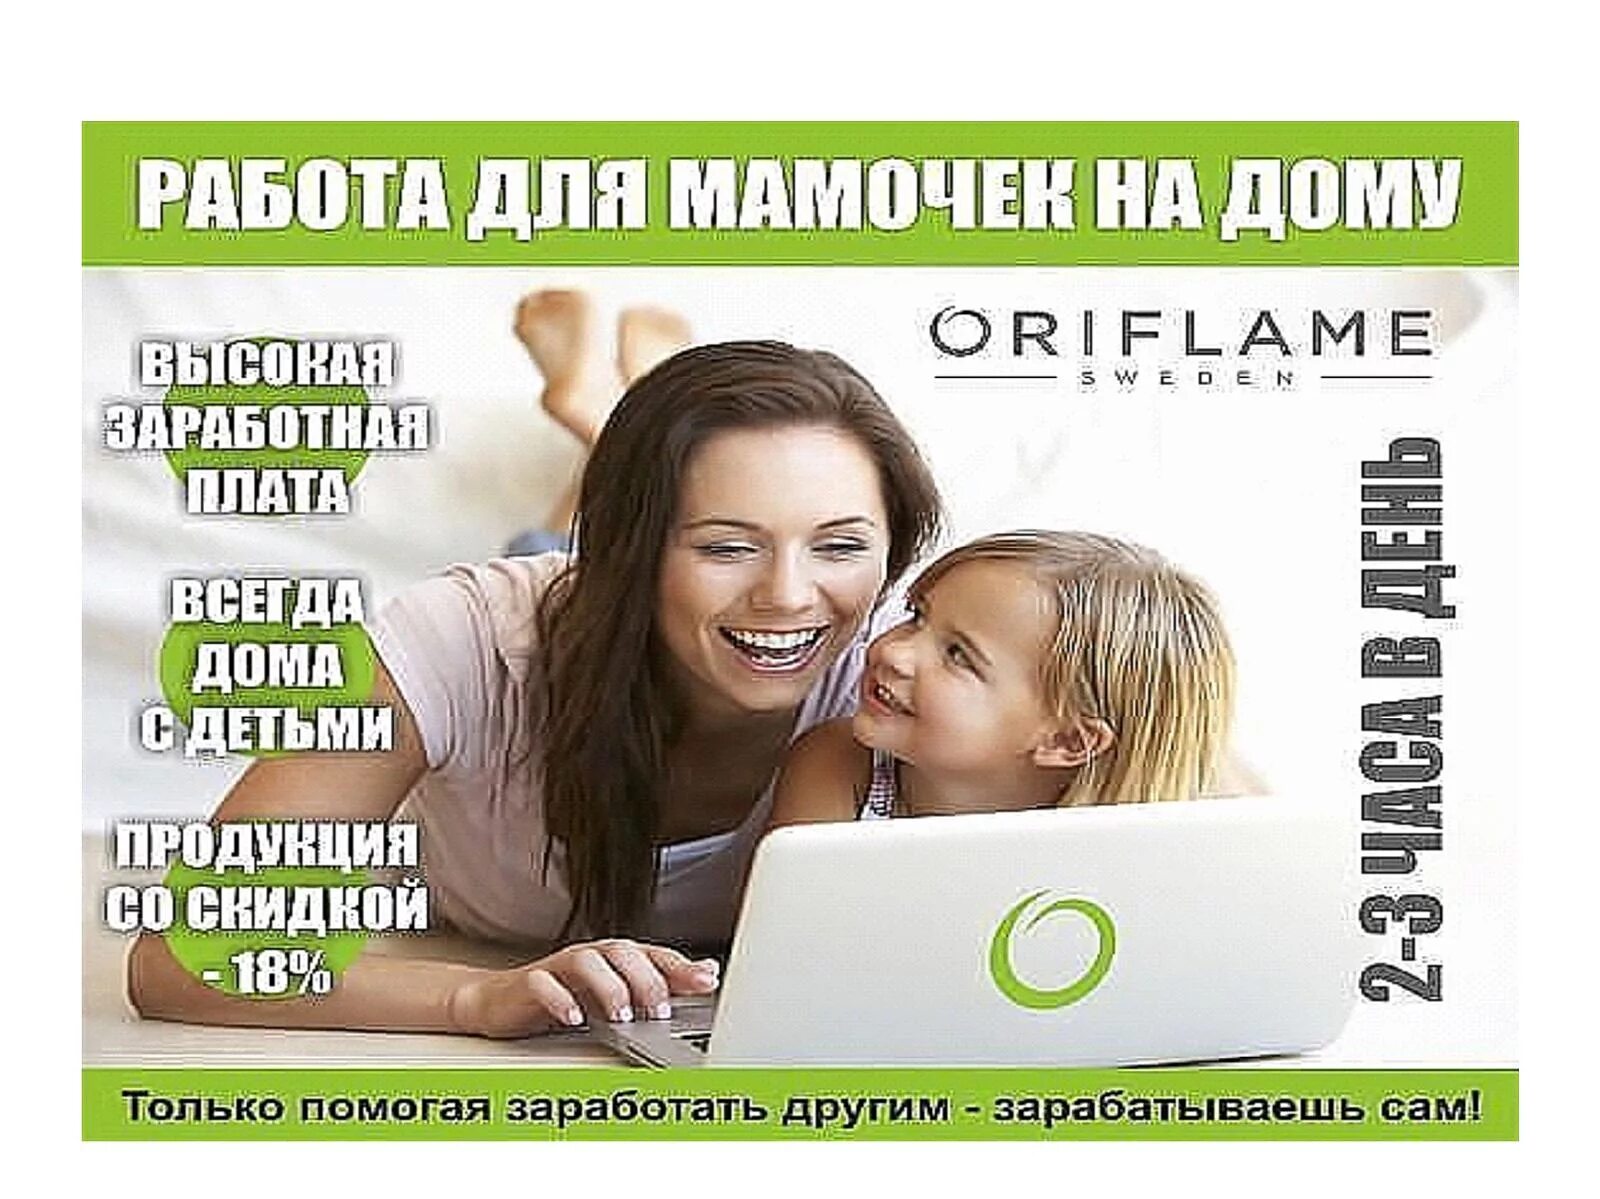 Орифлейм работа. Интернет для бизнеса реклама. Реклама работы Орифлейм. Визитки для сетевого бизнеса.